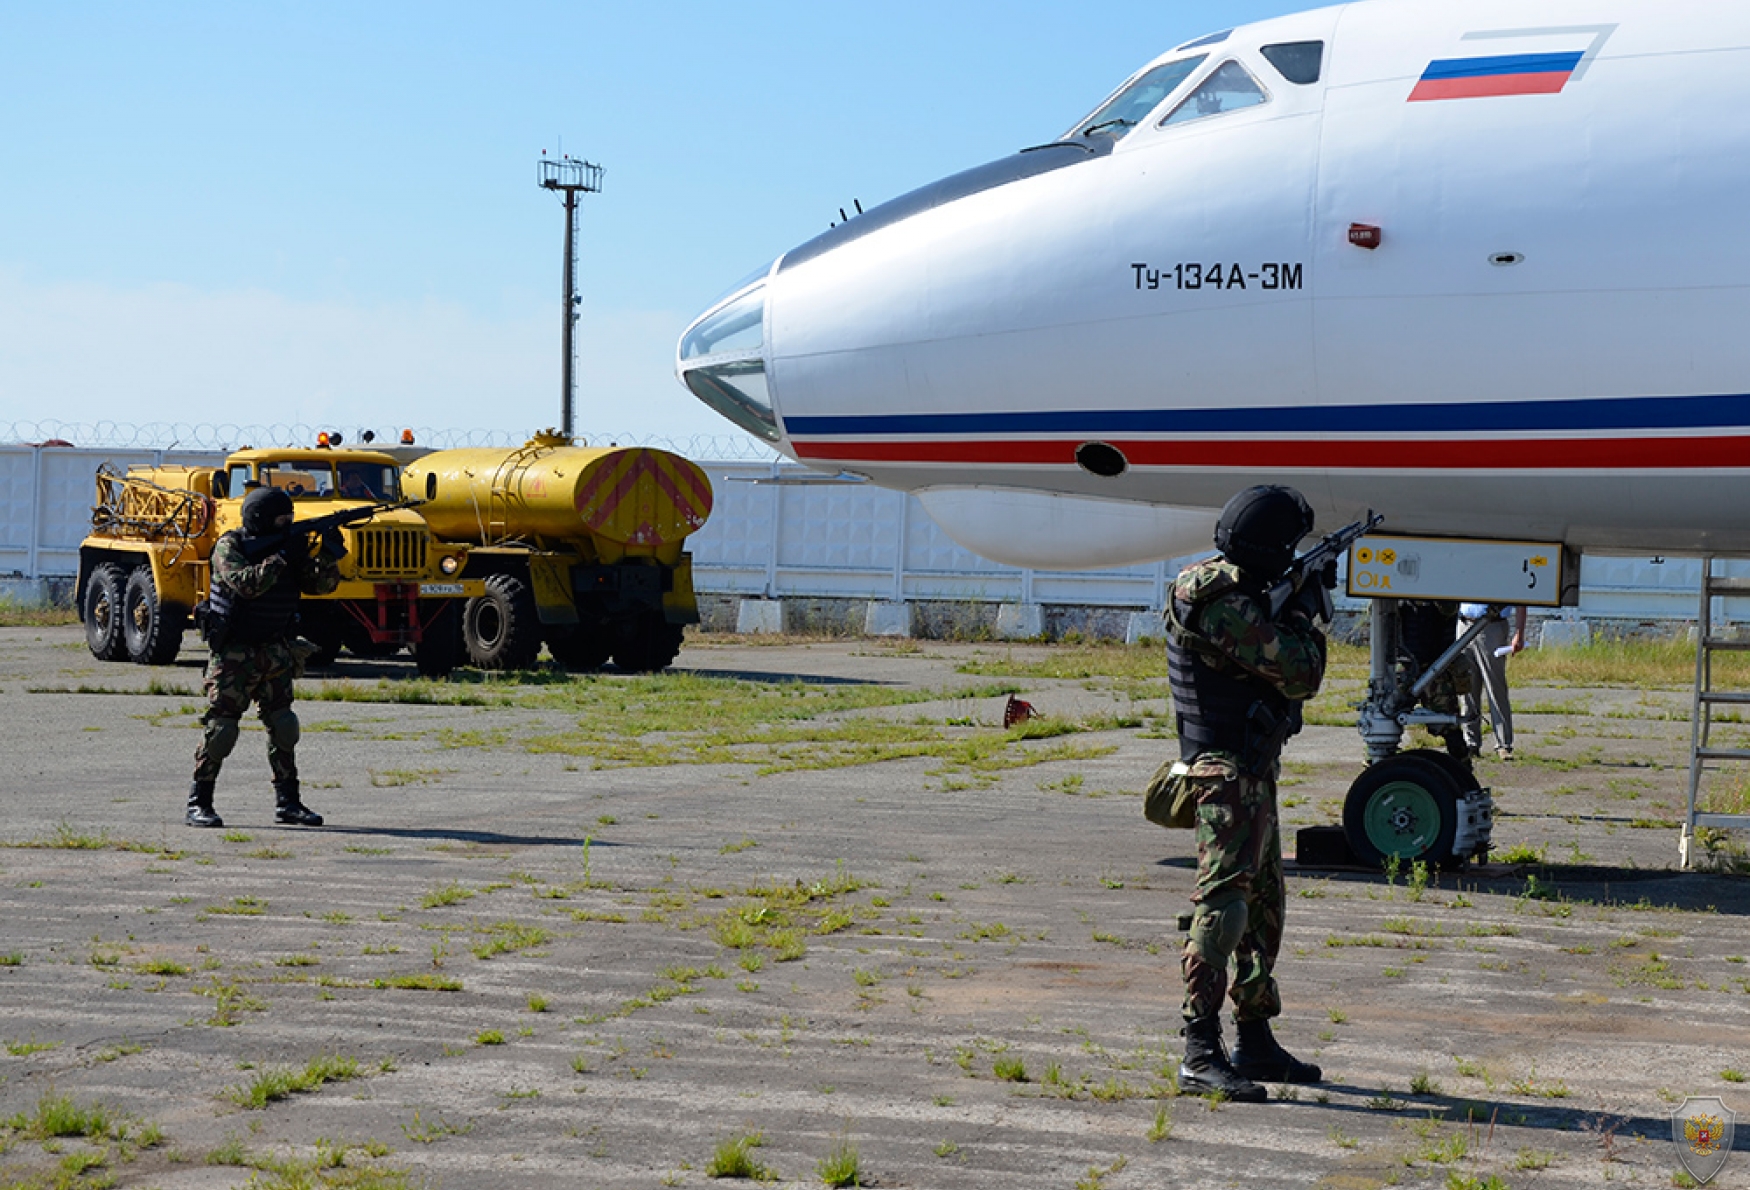 Оперативным штабом в Удмуртской Республике проведено антитеррористическое тактико-специальное учение «Метель – Набат 2018»